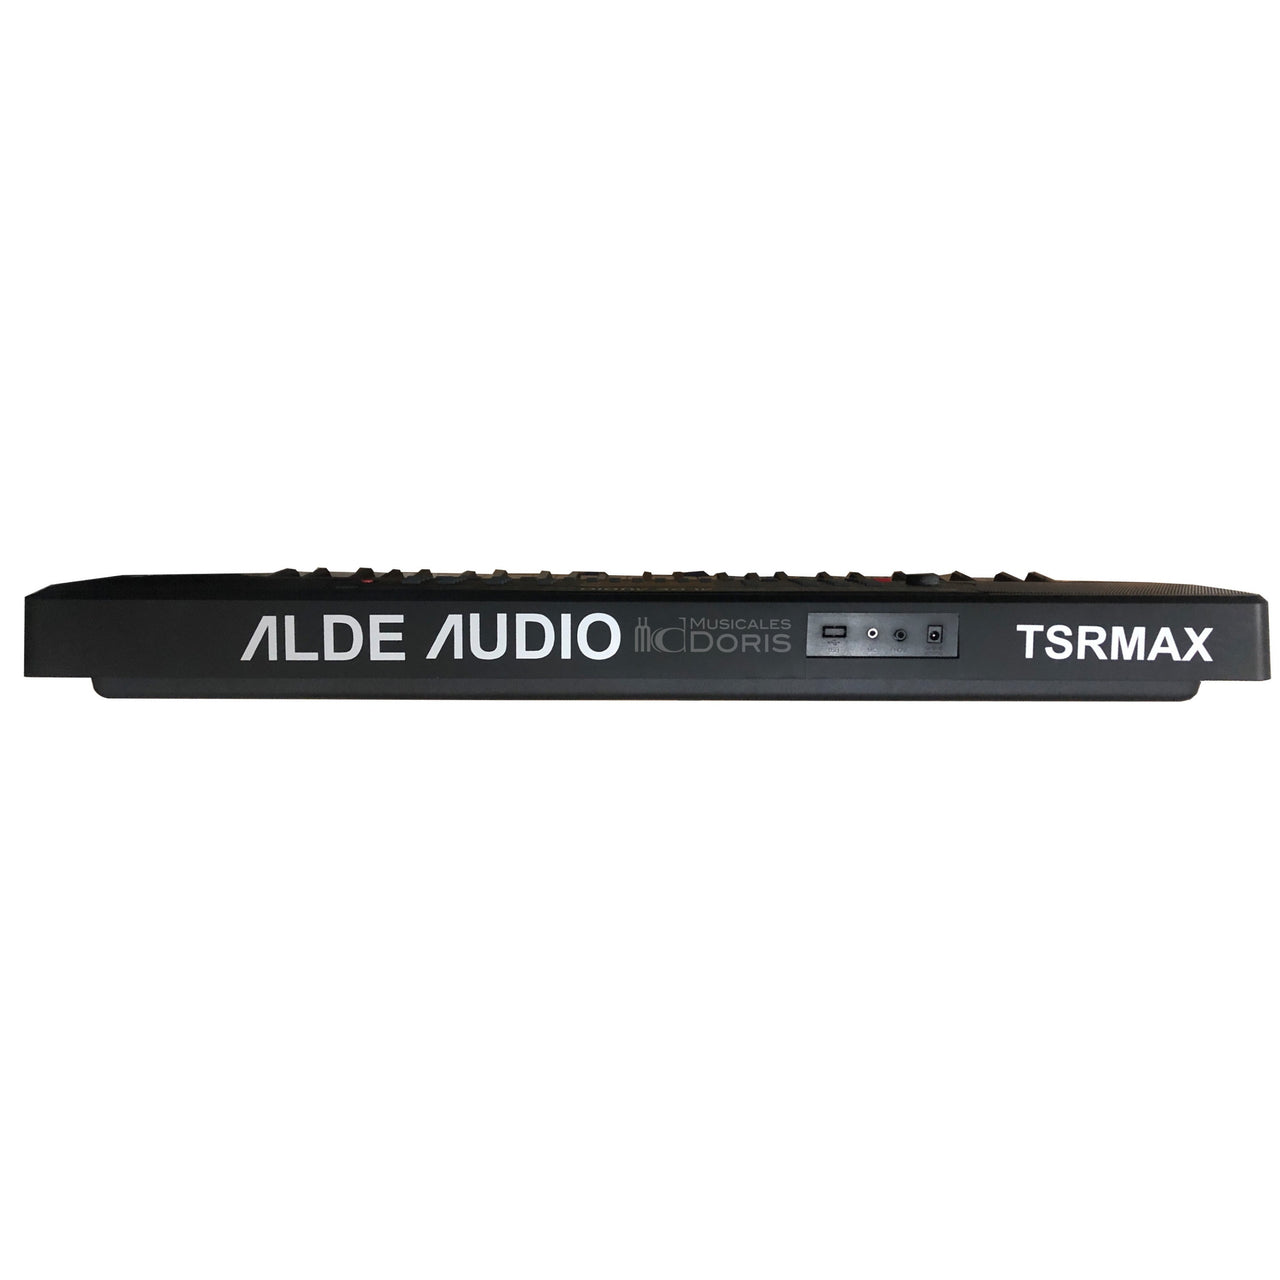 Teclado Alde Audio 54 Teclas, 160 Voces, 128 Acomp., 50 Demos, Tsrmax